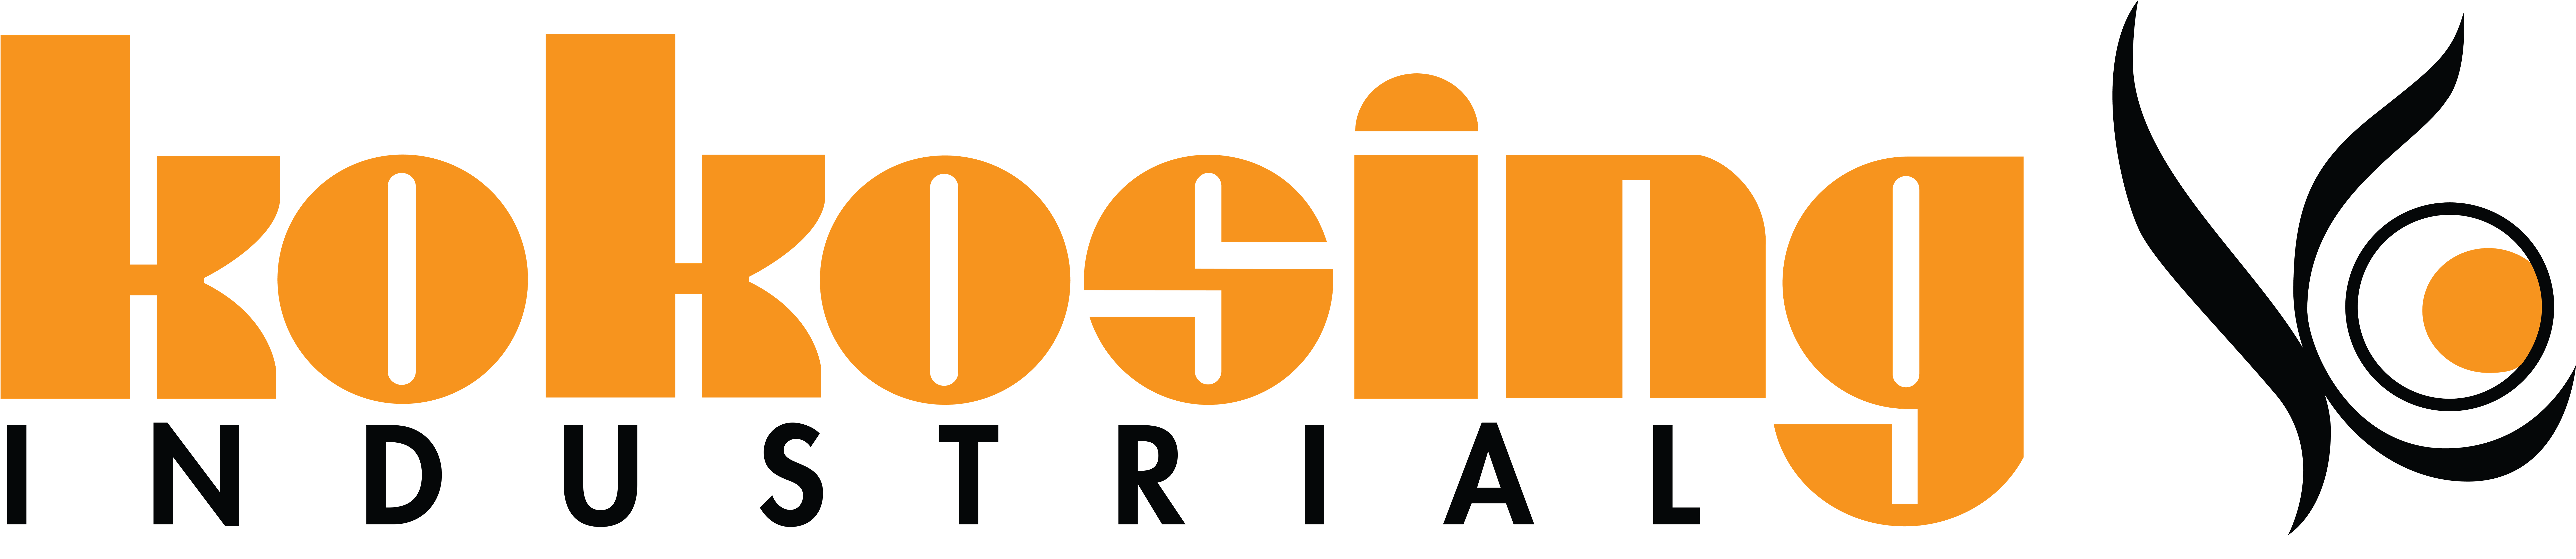 Kokosing Industrial Company Logo